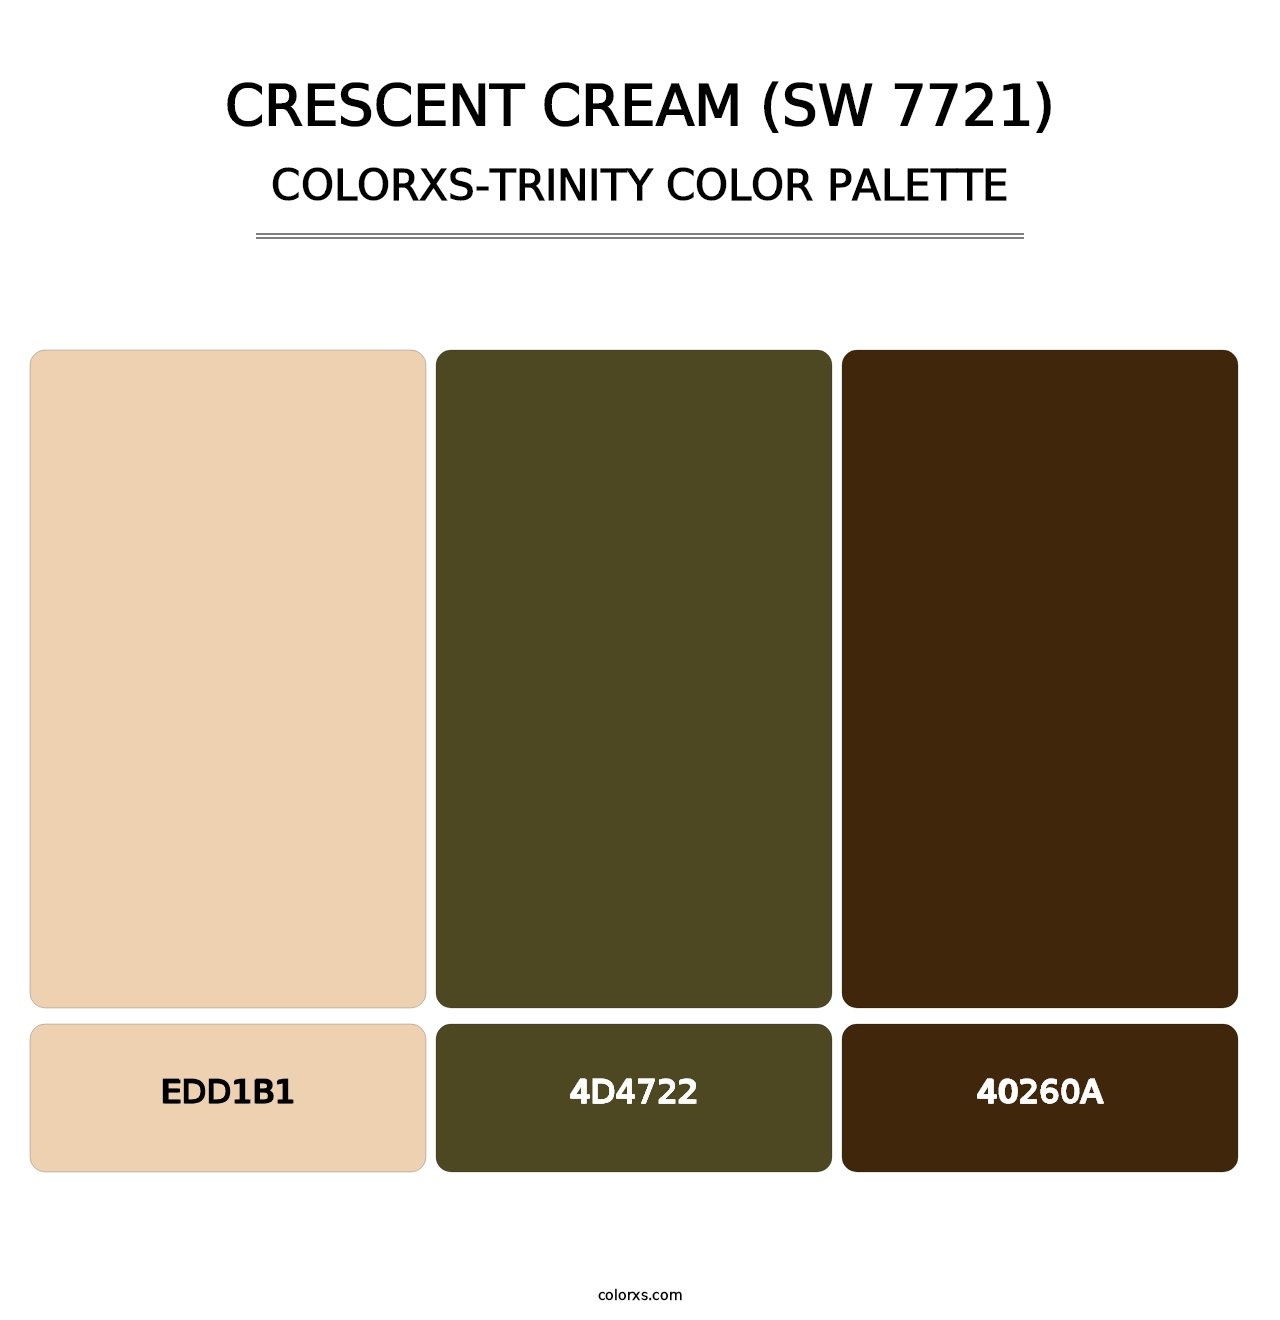 Crescent Cream (SW 7721) - Colorxs Trinity Palette